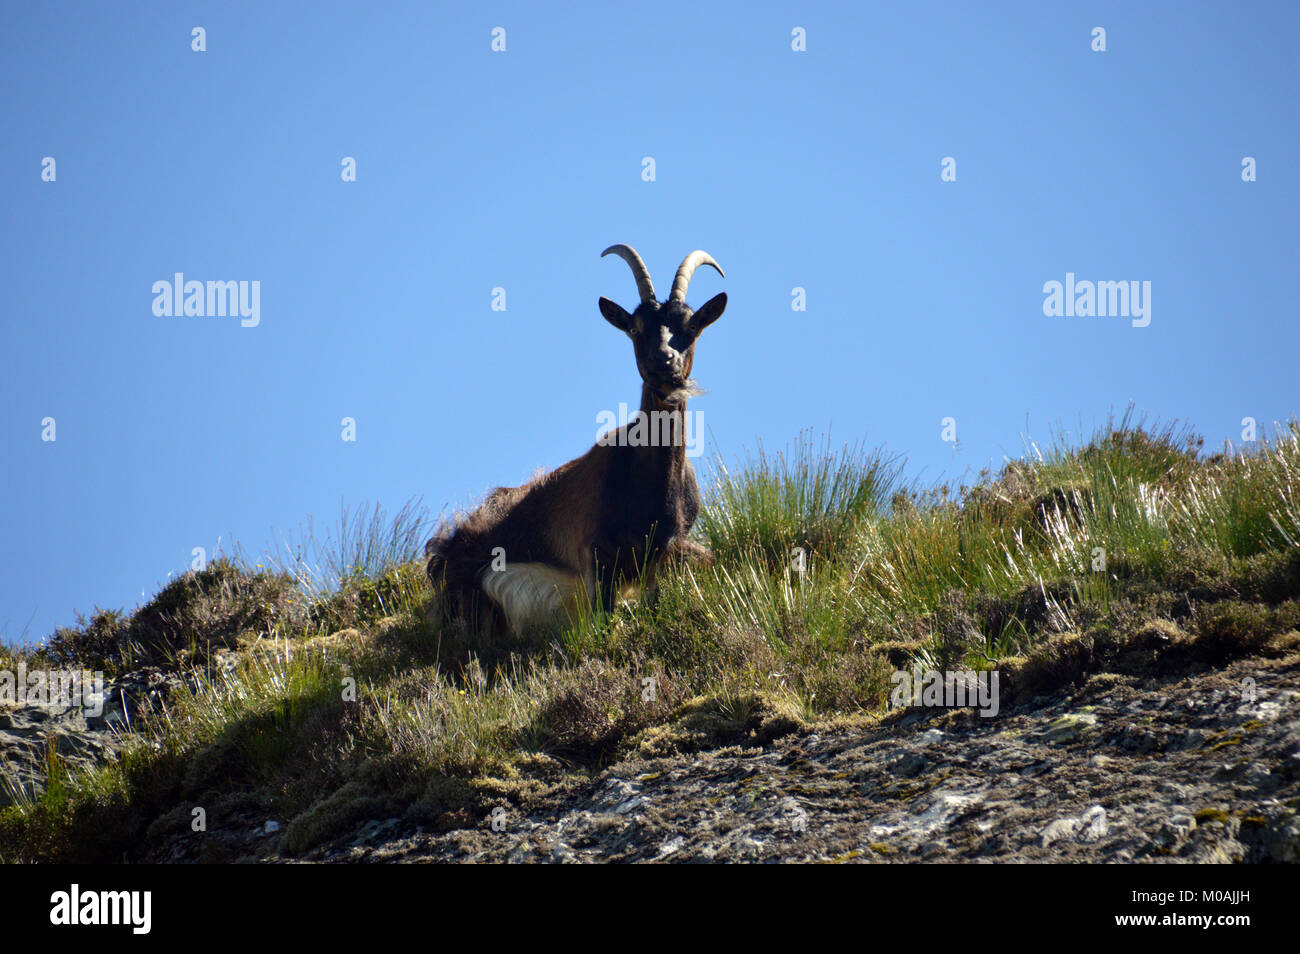 Cabra solitaria parte de un rebaño de cabras asilvestradas silvestres curiosos cerca de la Cumbre de la montaña escocés Beinn Corbett un Choin en las Tierras Altas de Escocia, Reino Unido. Foto de stock